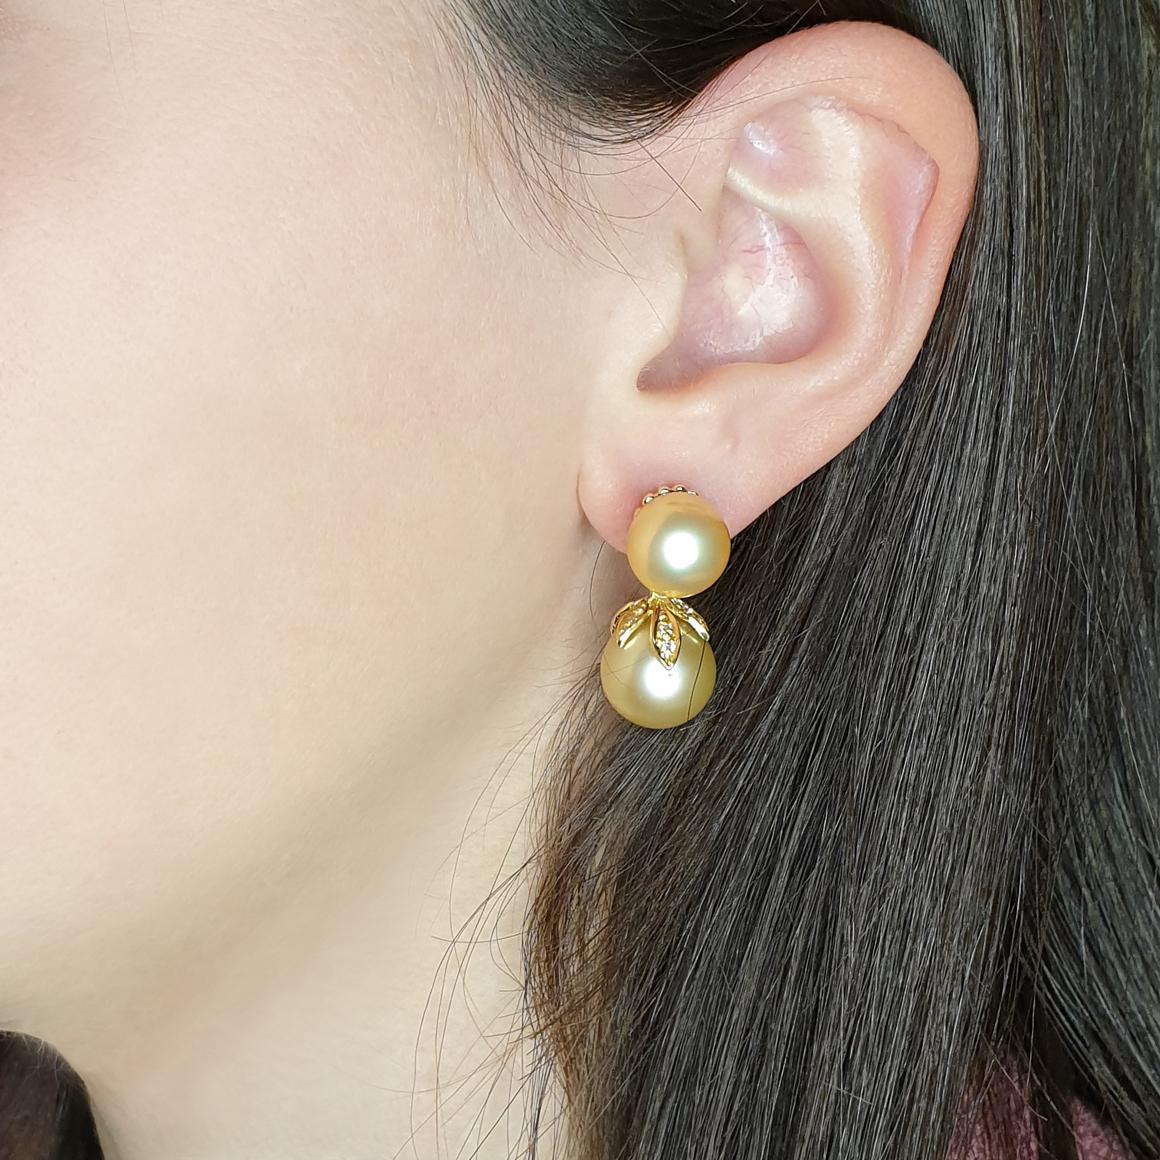 Boucles d'oreilles classiques et fashion en or jaune 18 carats avec des perles dorées (10 et 12 mm) et des diamants blancs cts 0.20 VS couleur G/H.  Fabriqué à la main en Italie par Stanoppi Jewellery depuis 1948

(Possibilité d'avoir une bague dans